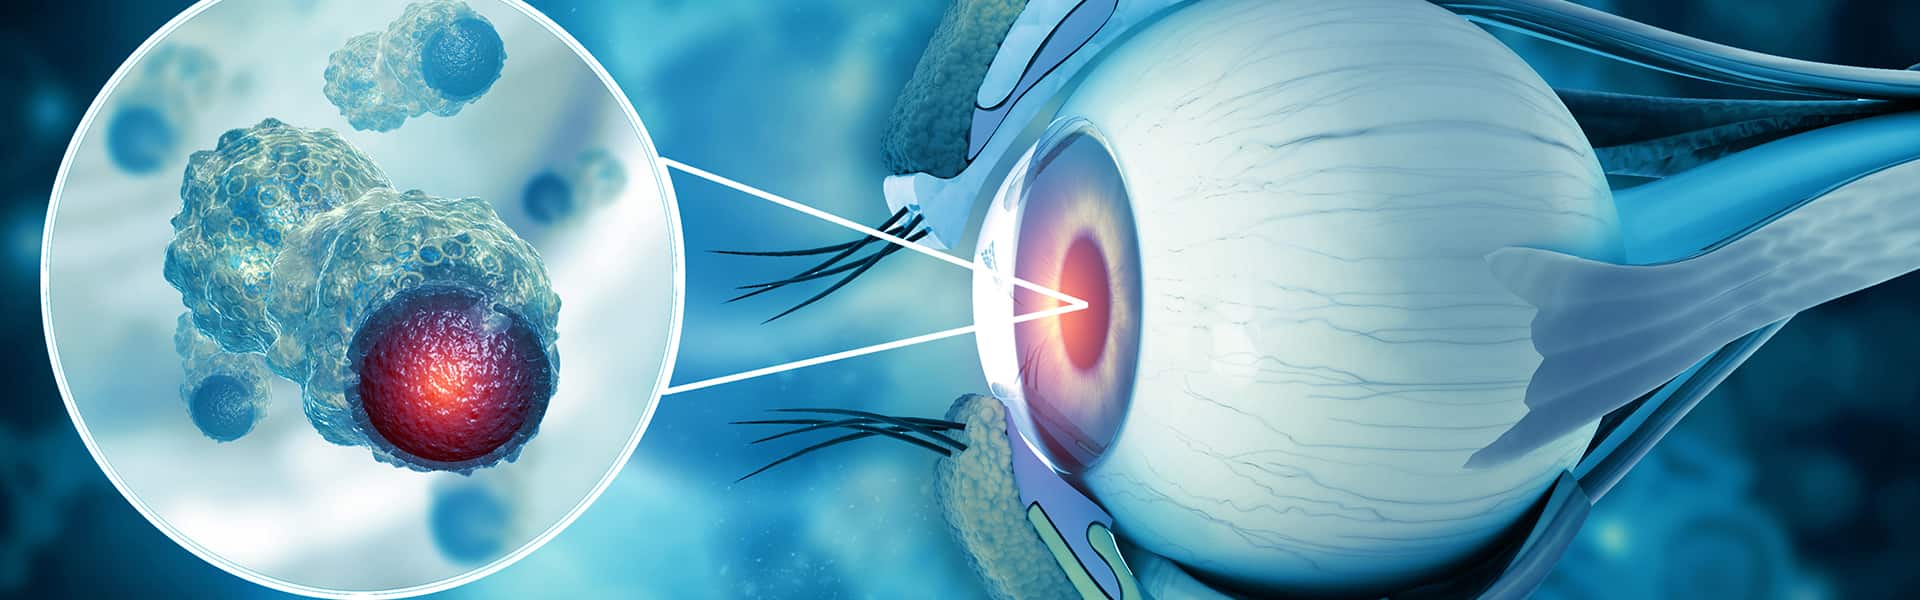 برنامج علاج أورام العين